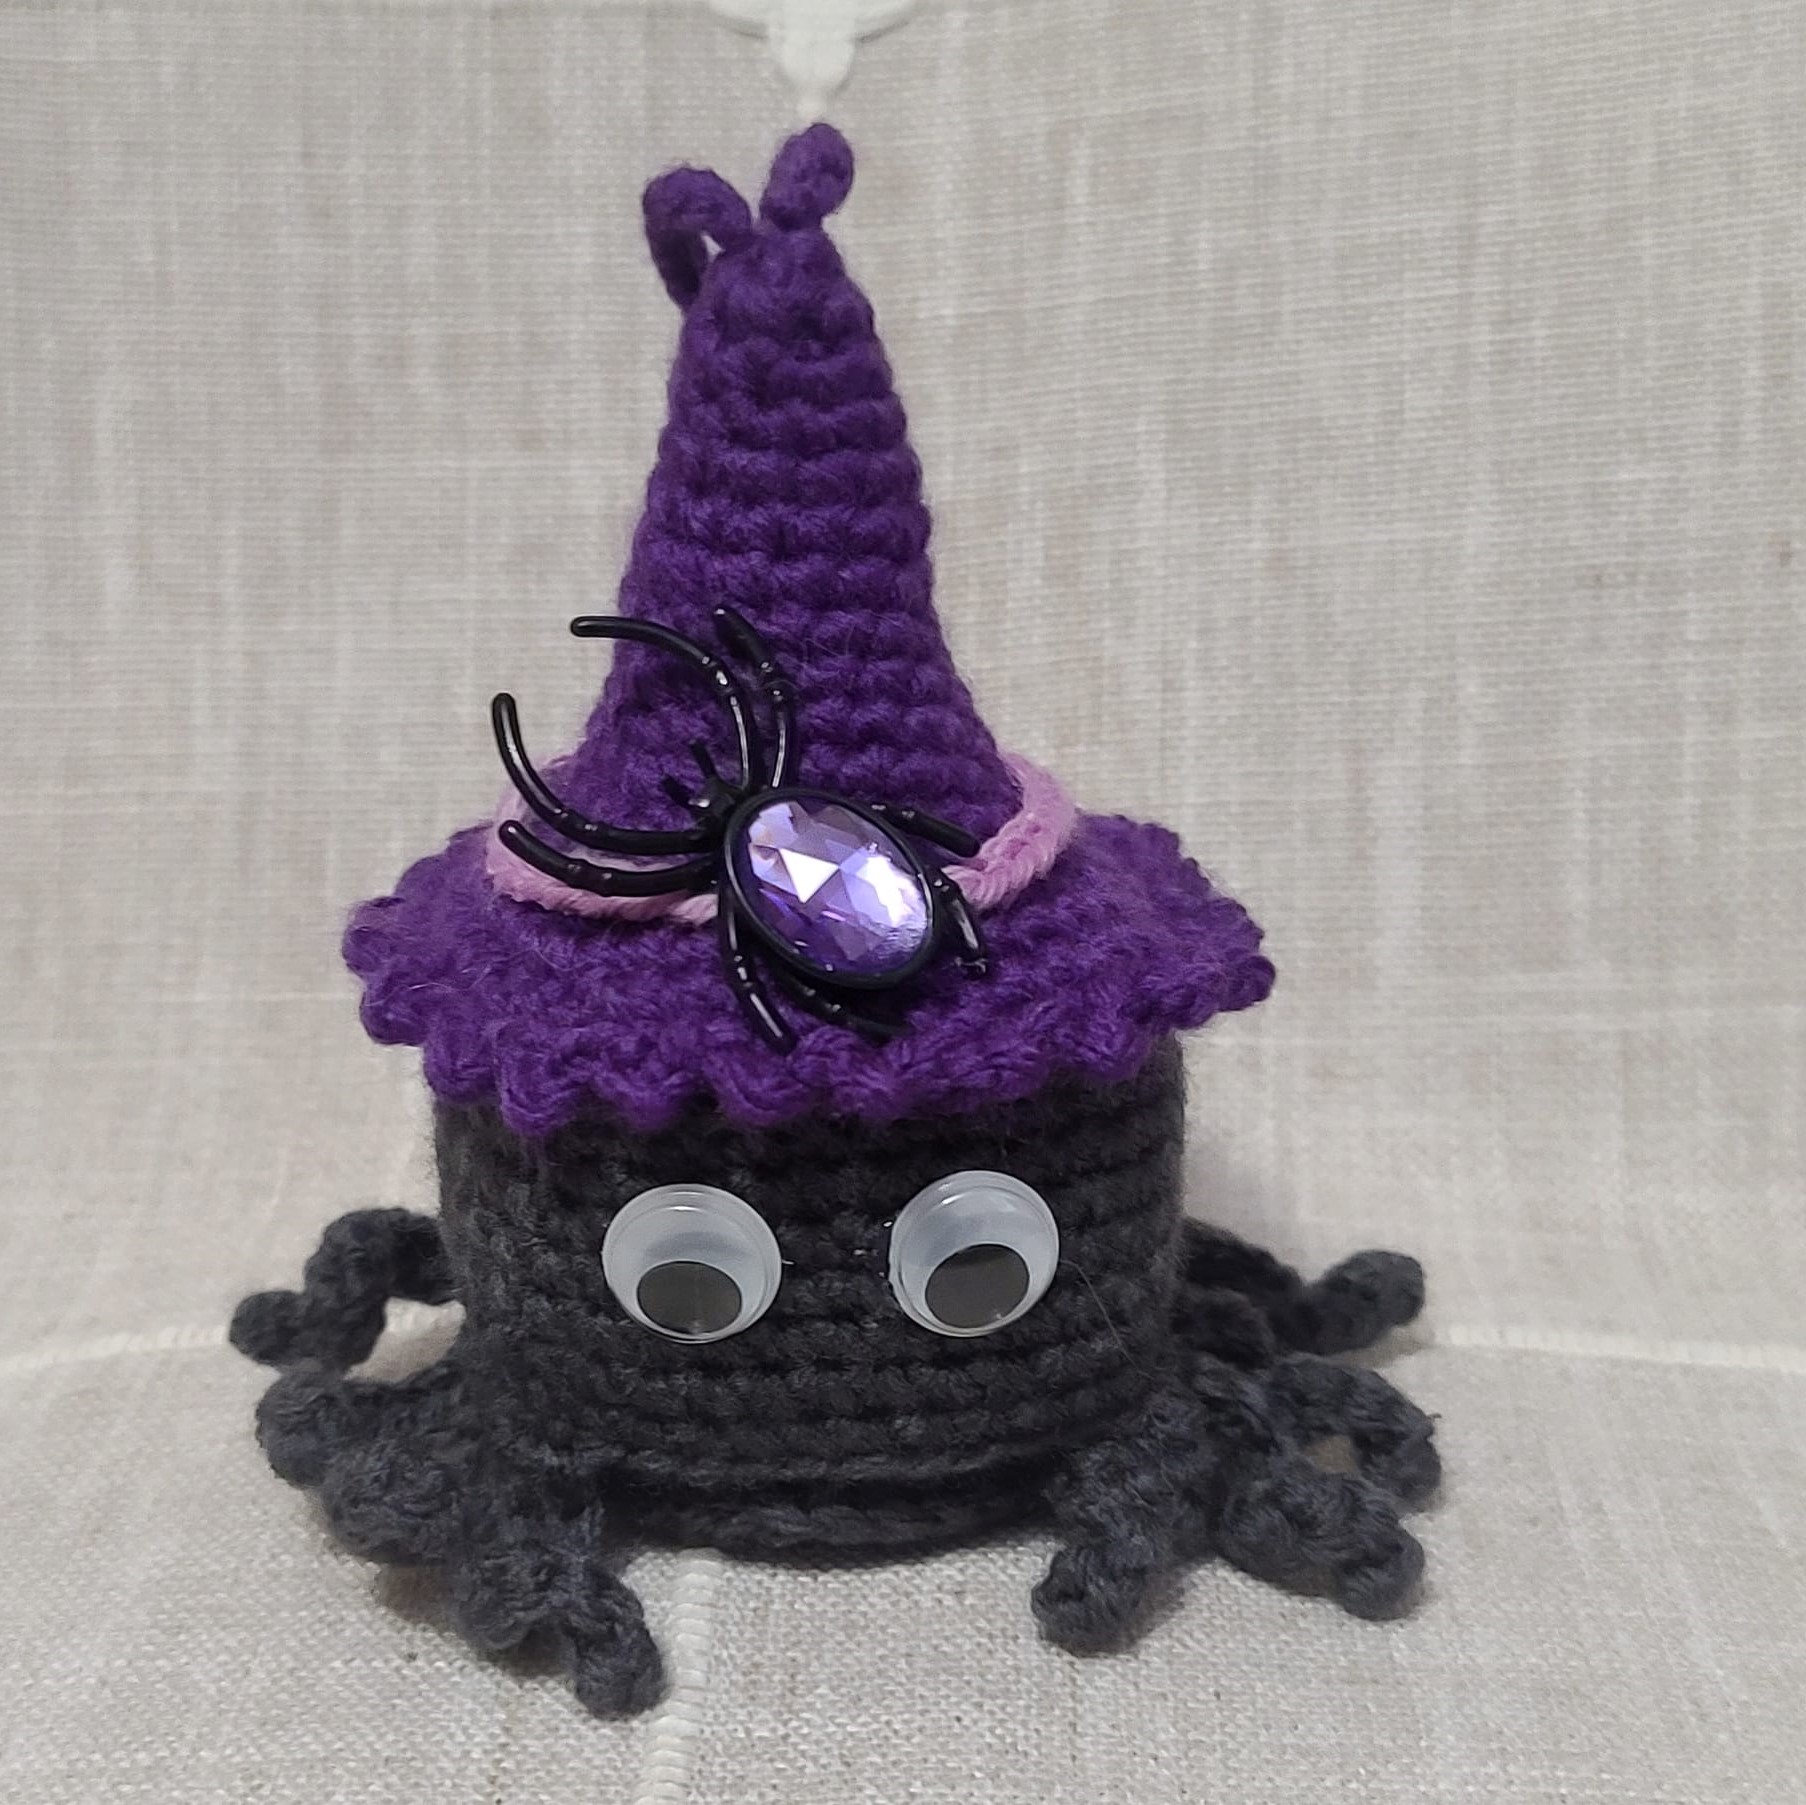 Crochet amigurumi halloween dark gray spider purple witch hat